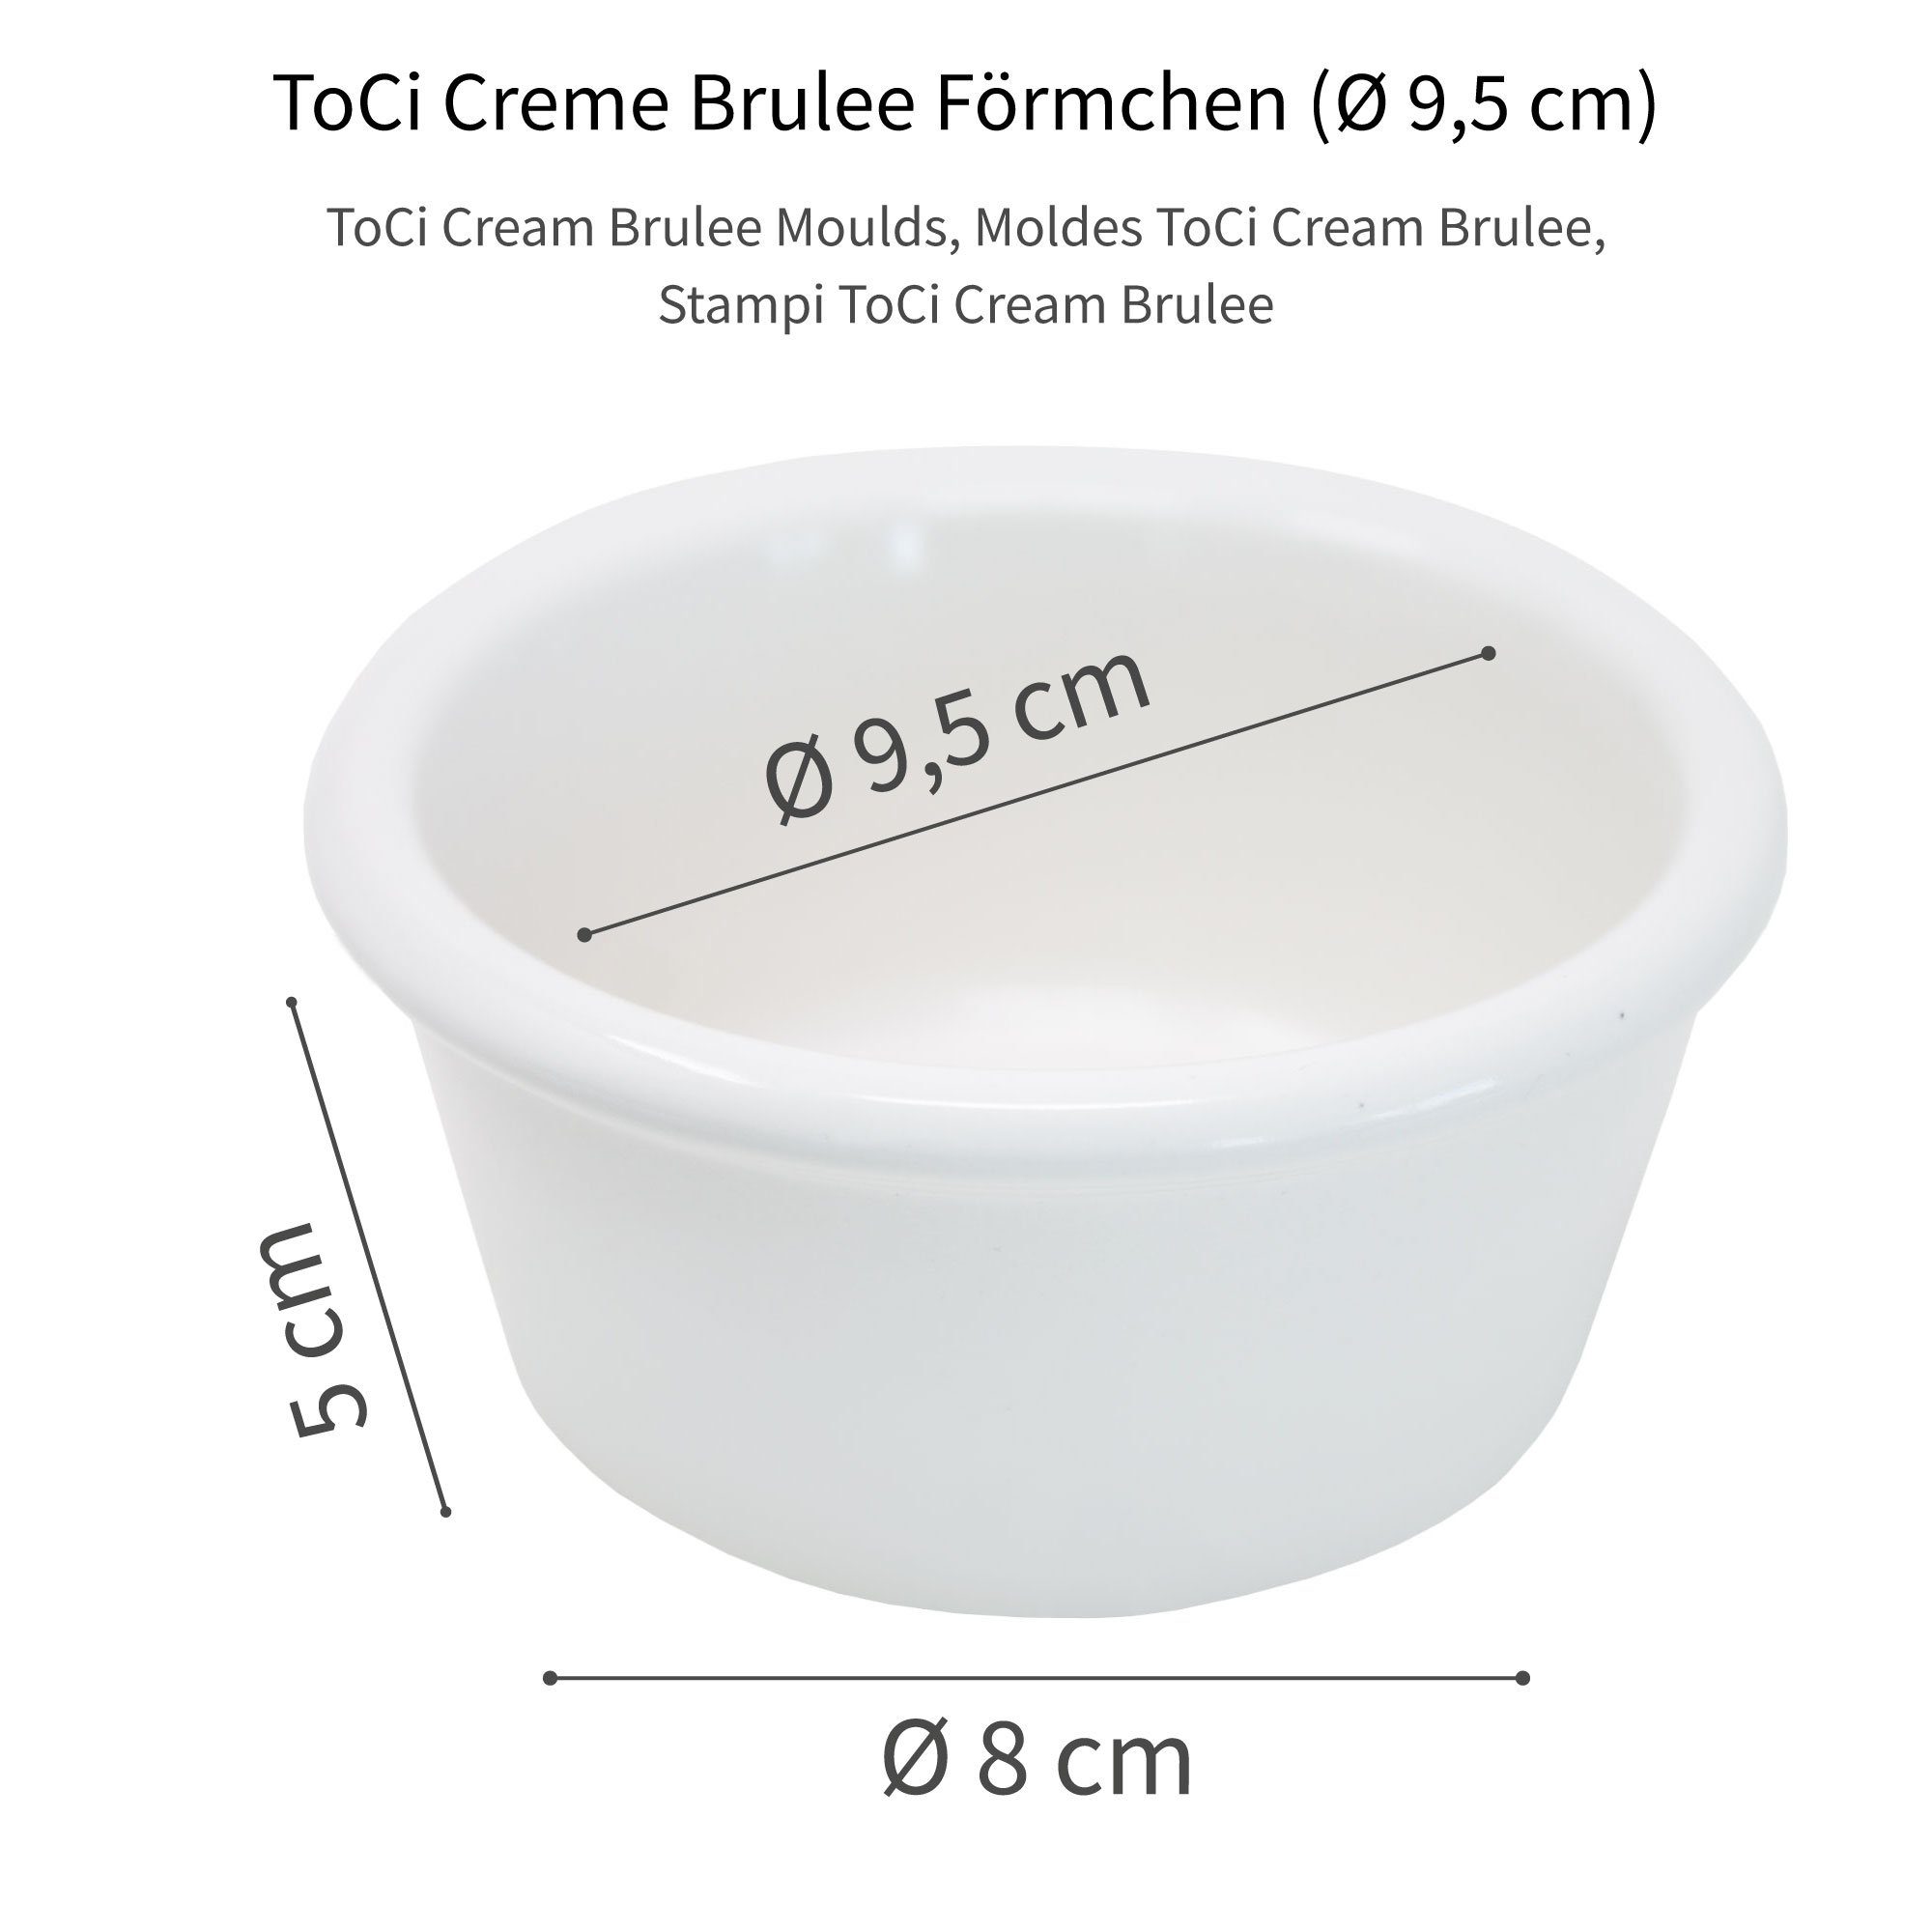 Keramik Brulee Creme Ofen-Schalen Weiss cm ToCi Servierschale Pastetenform Förmchen 9,5